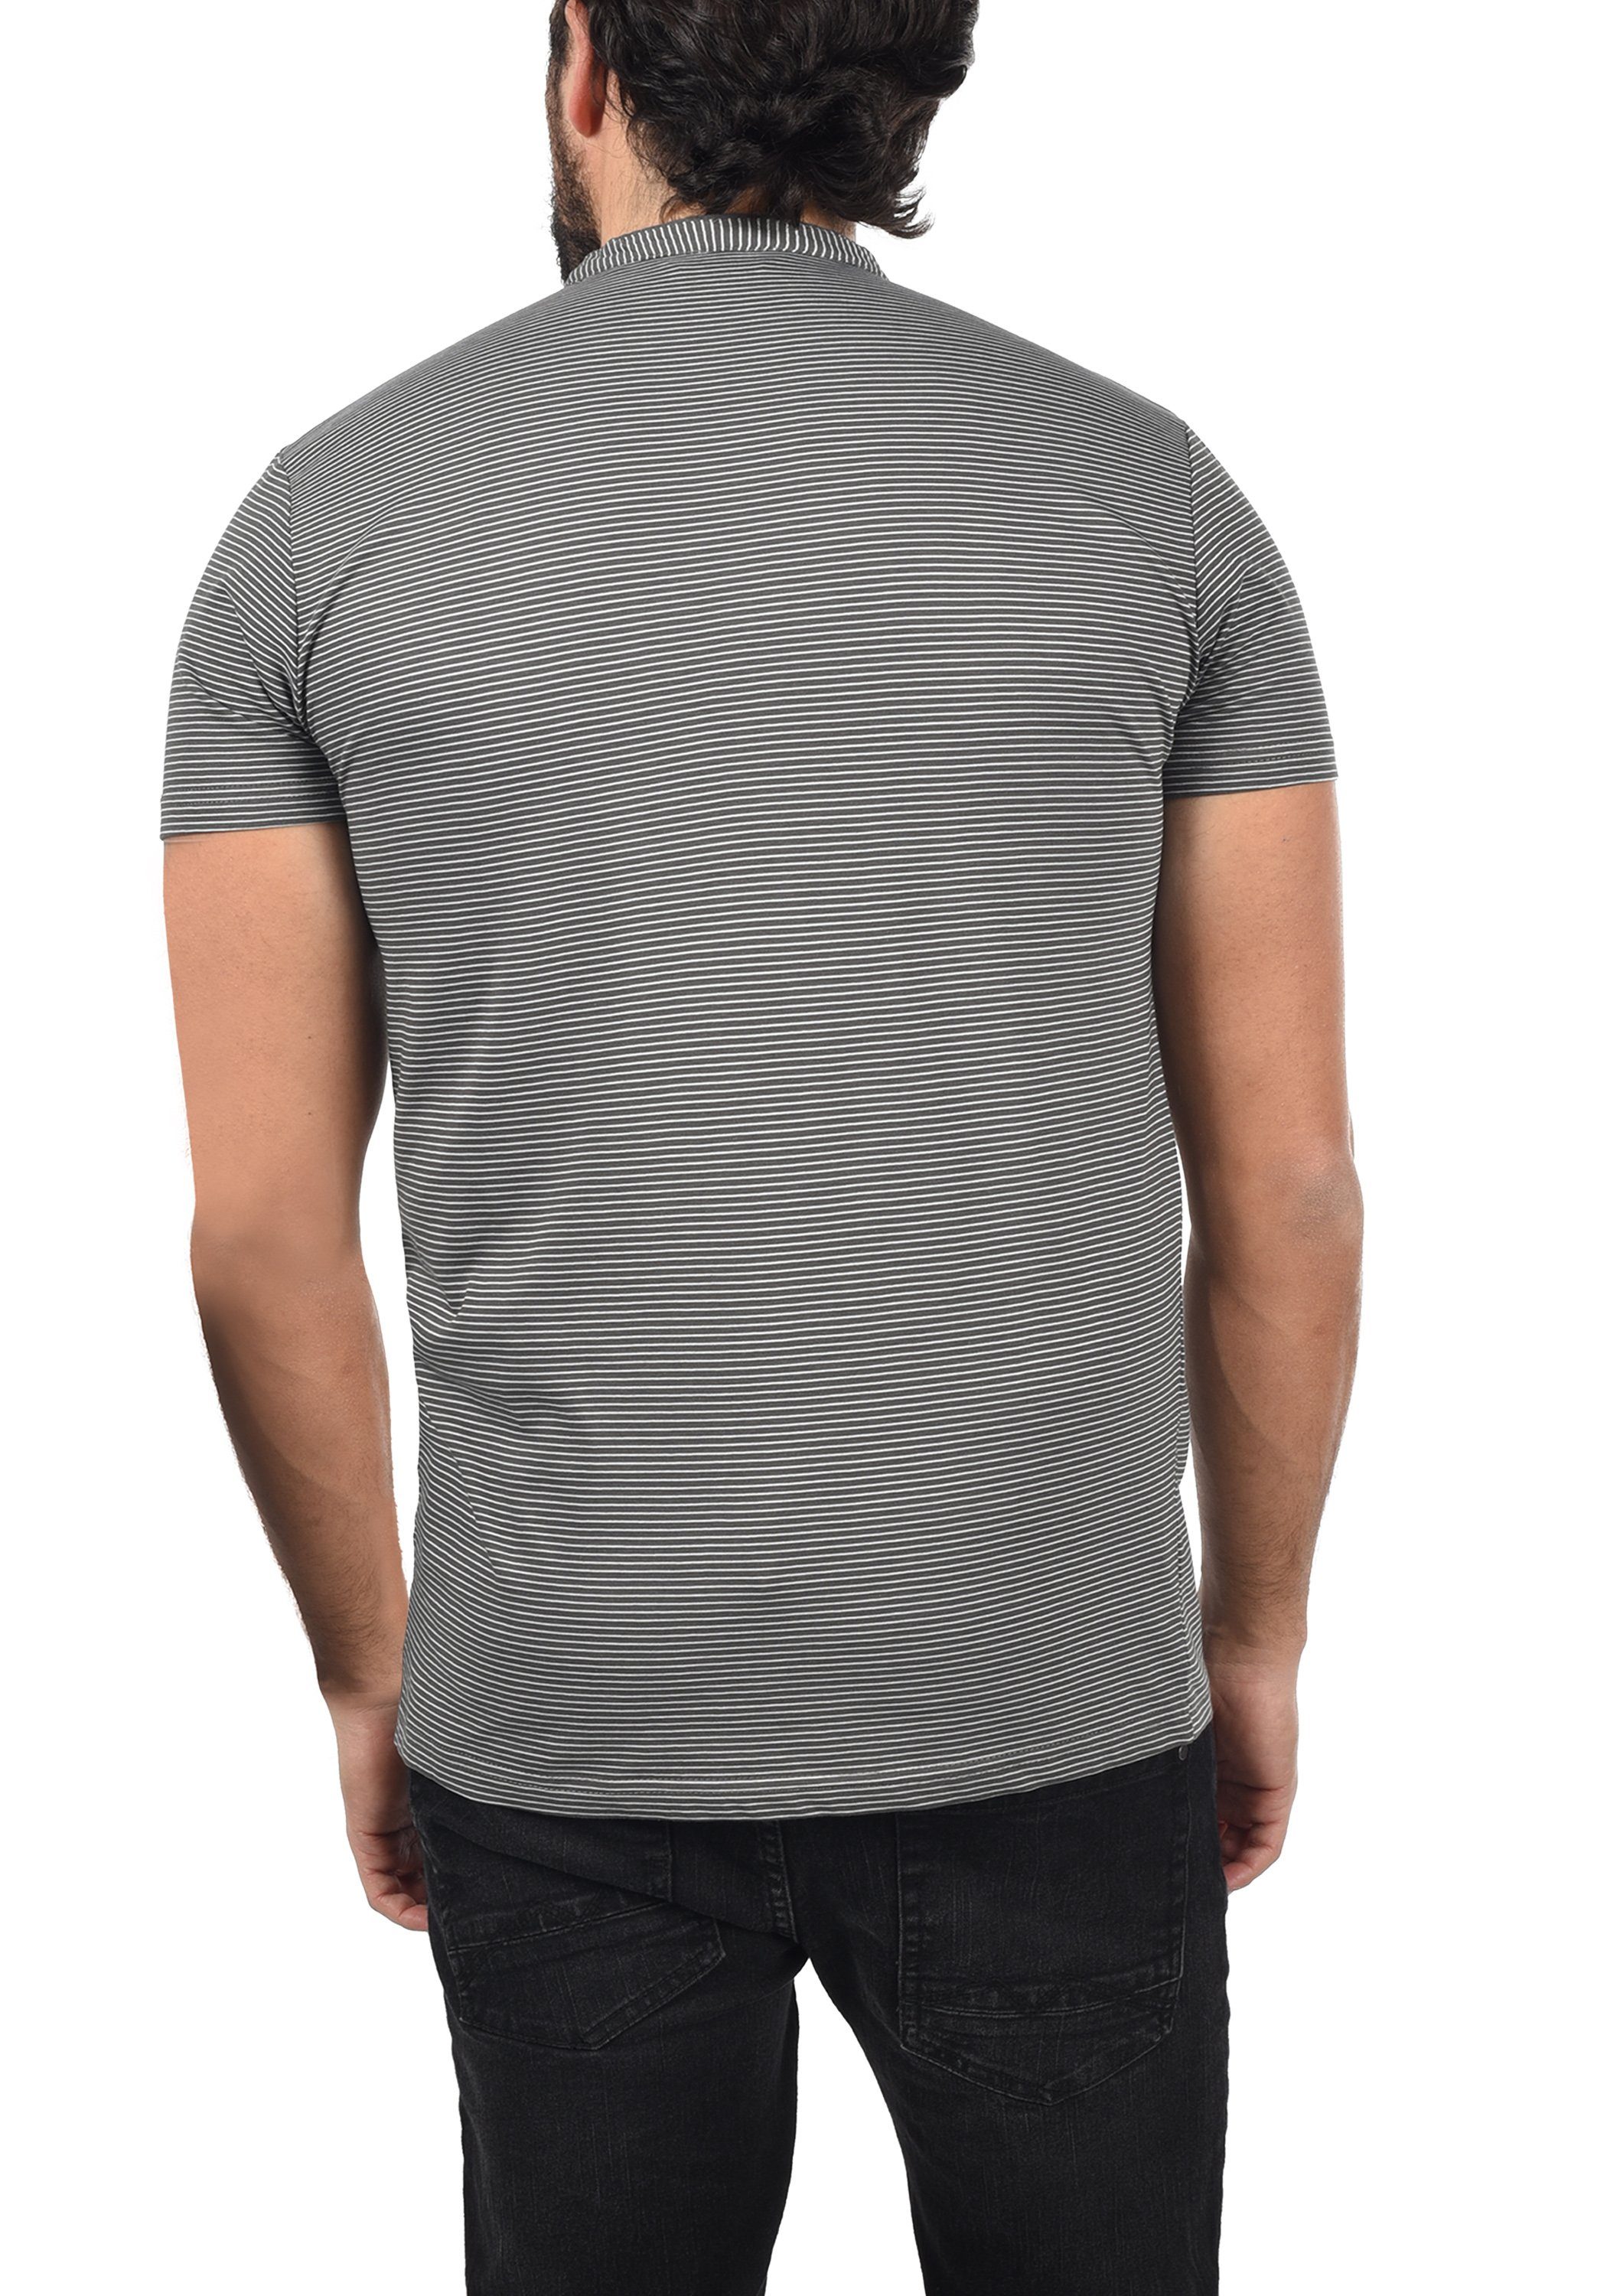 Rundhalsshirt Dark Melange T-Shirt !Solid SDAlfi Grey (8288)